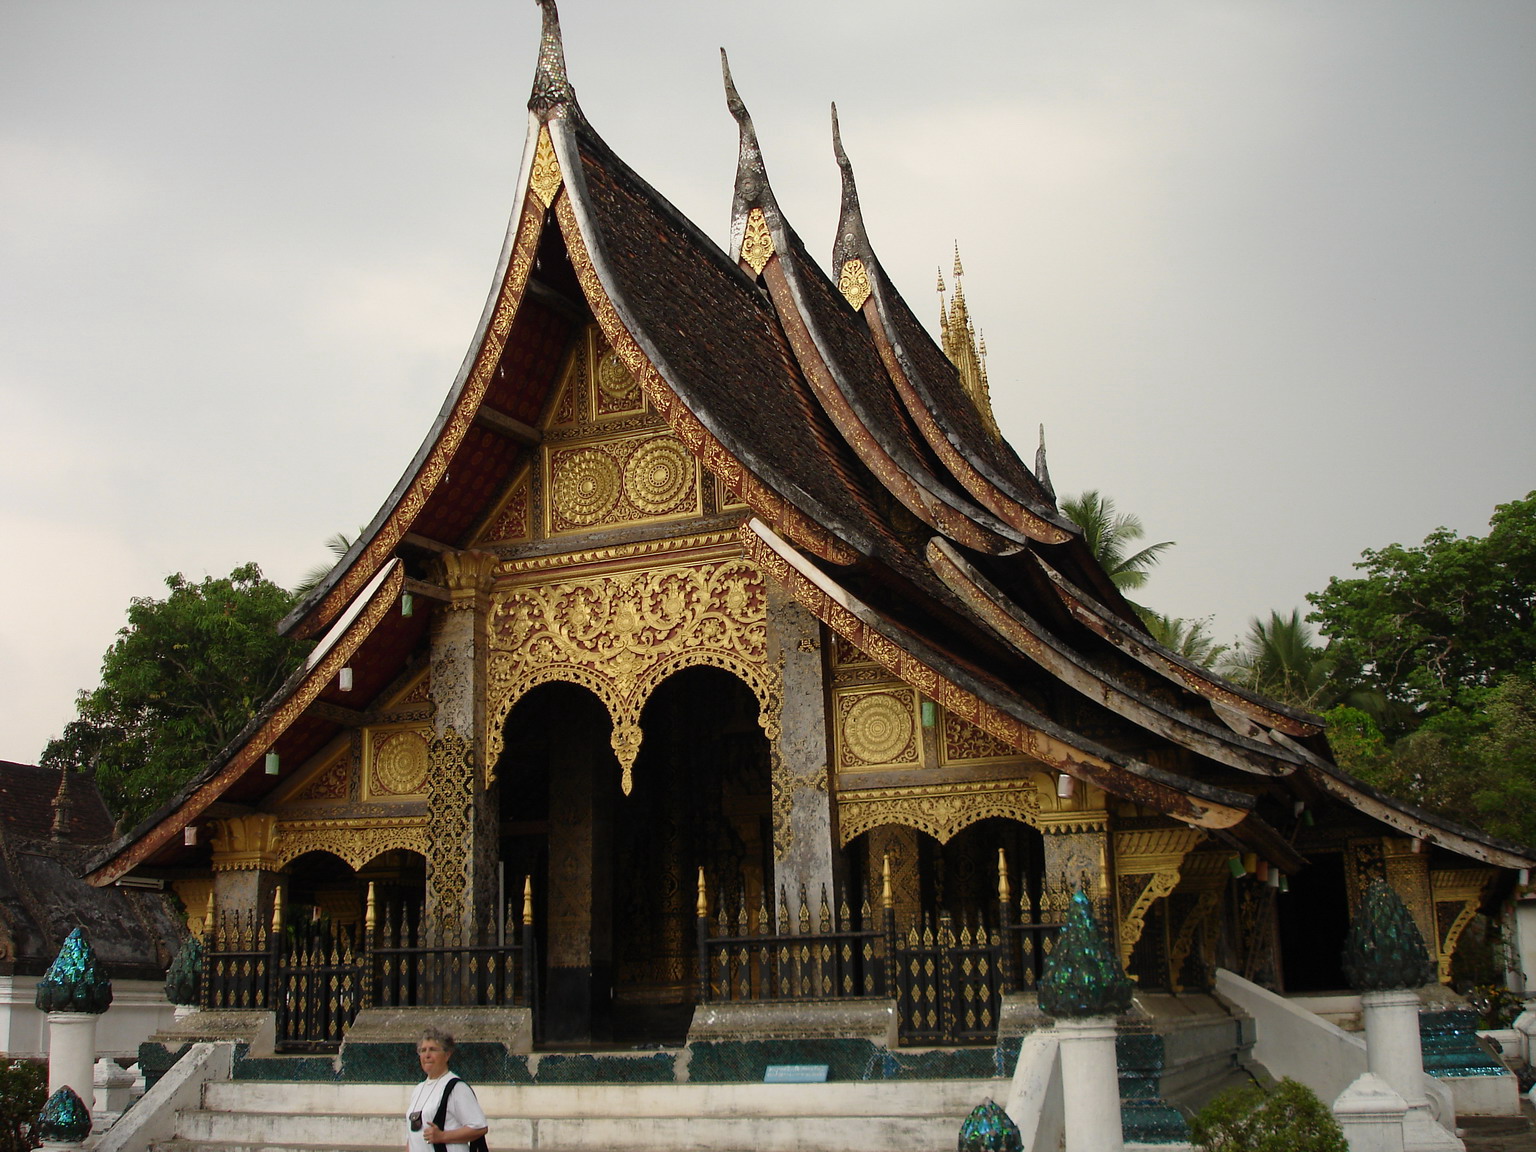 Lao Style Architecture